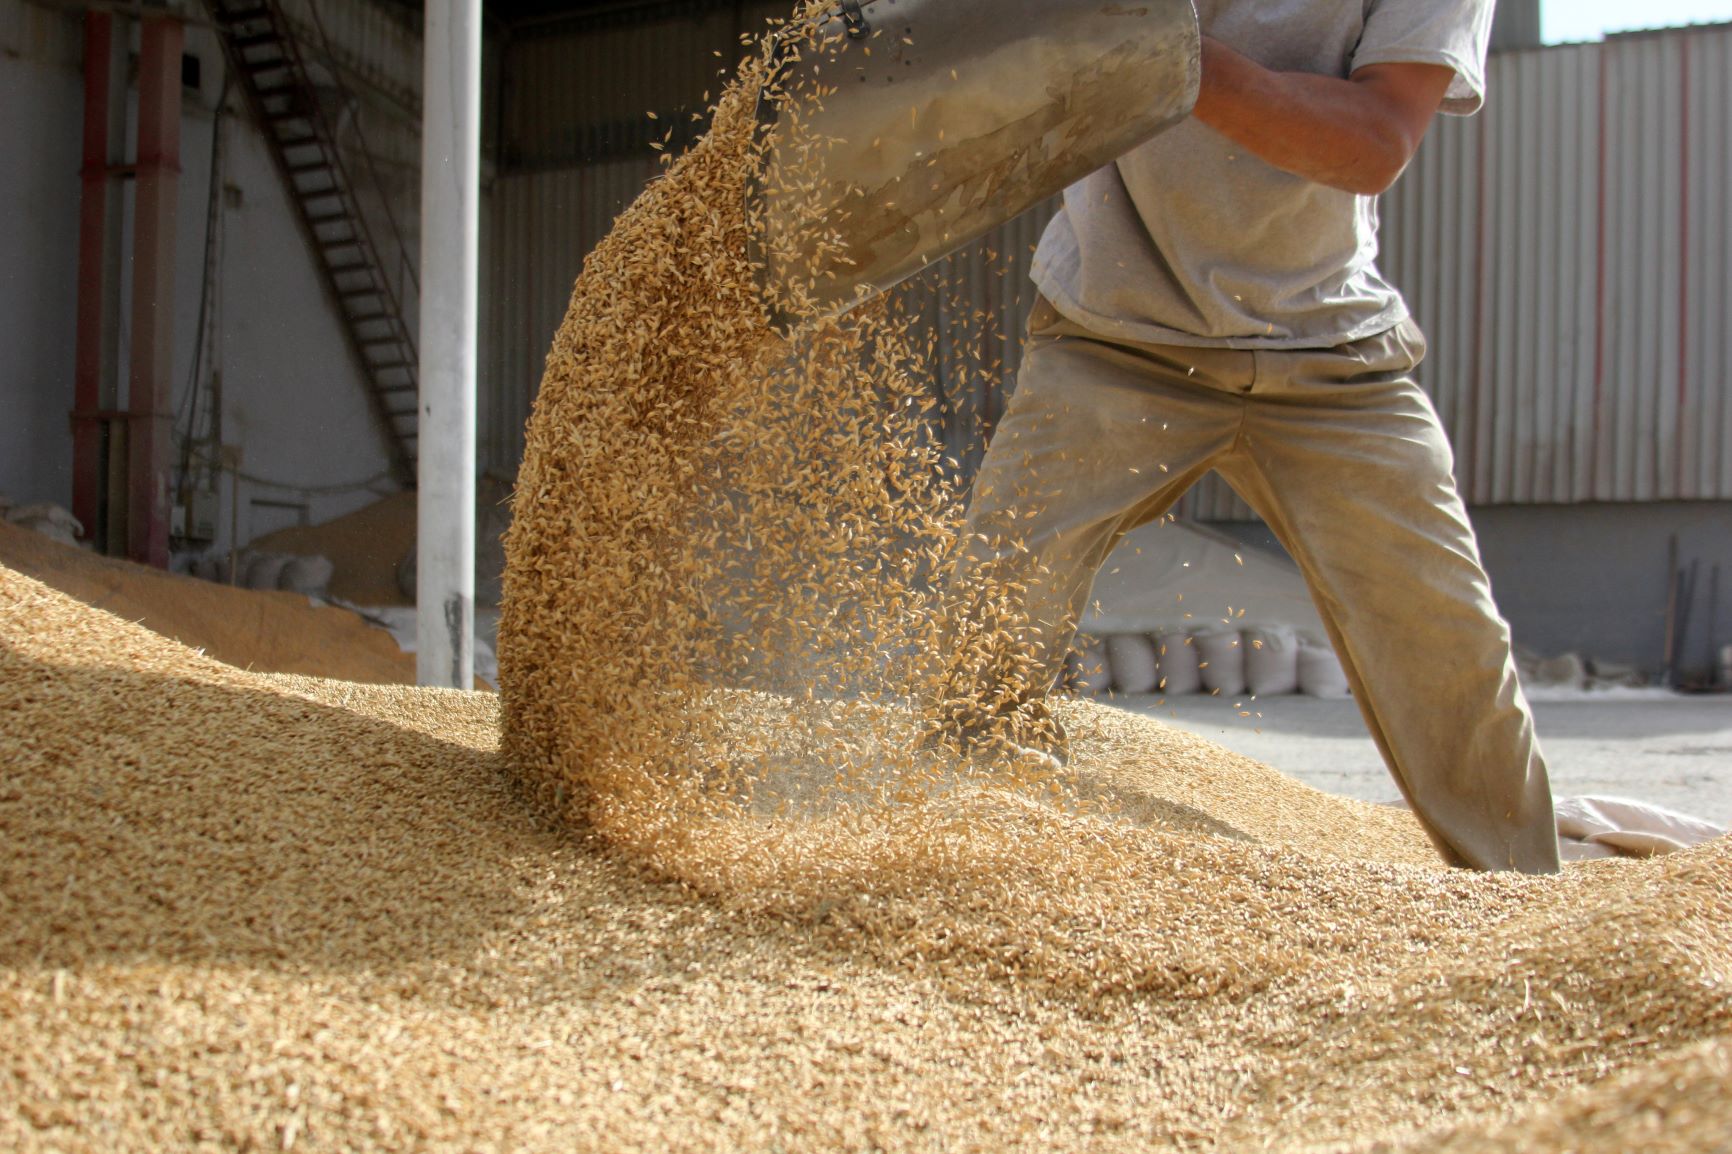 worker moving grain under grain silo